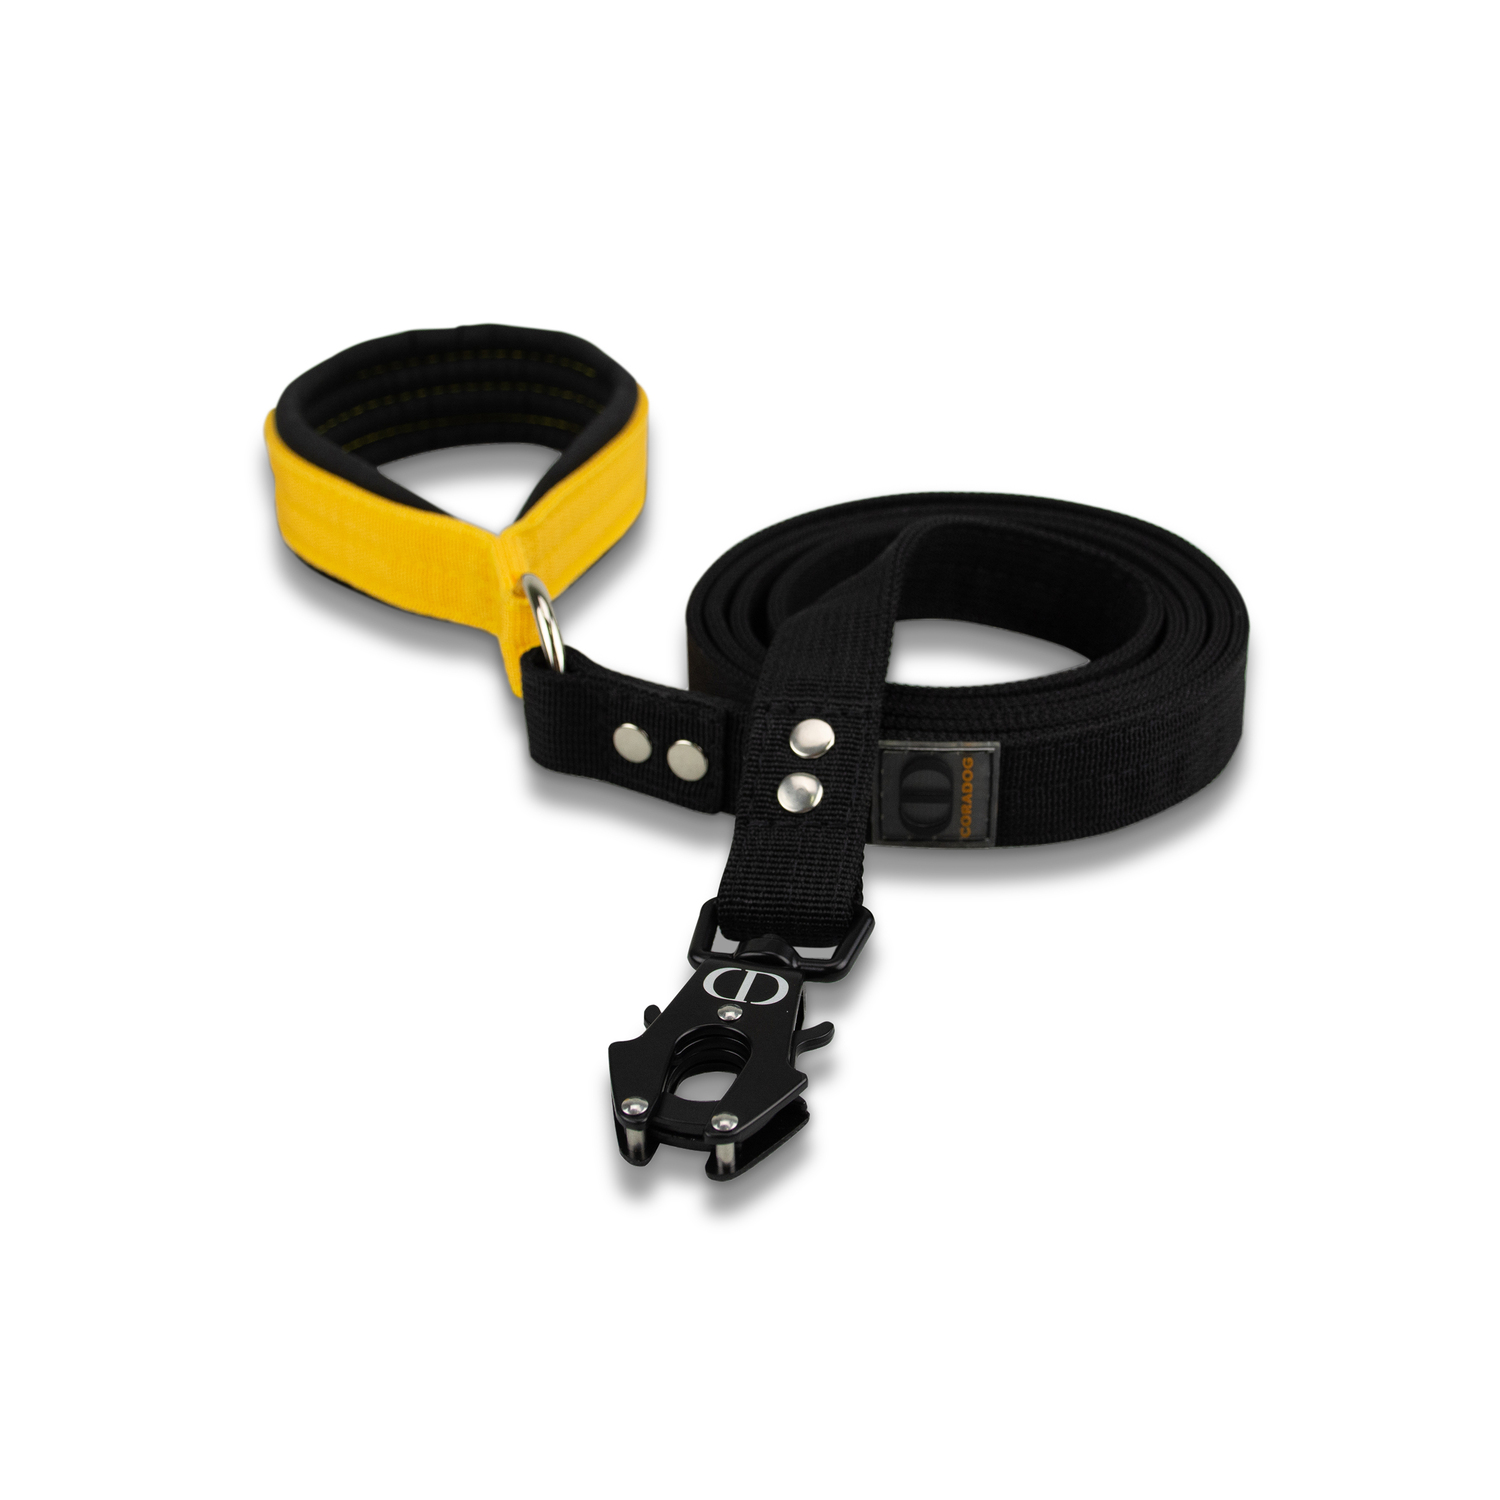 Поводок с карабином самозахватом CORADOG Double Power Black frog, цвет желтый, черный